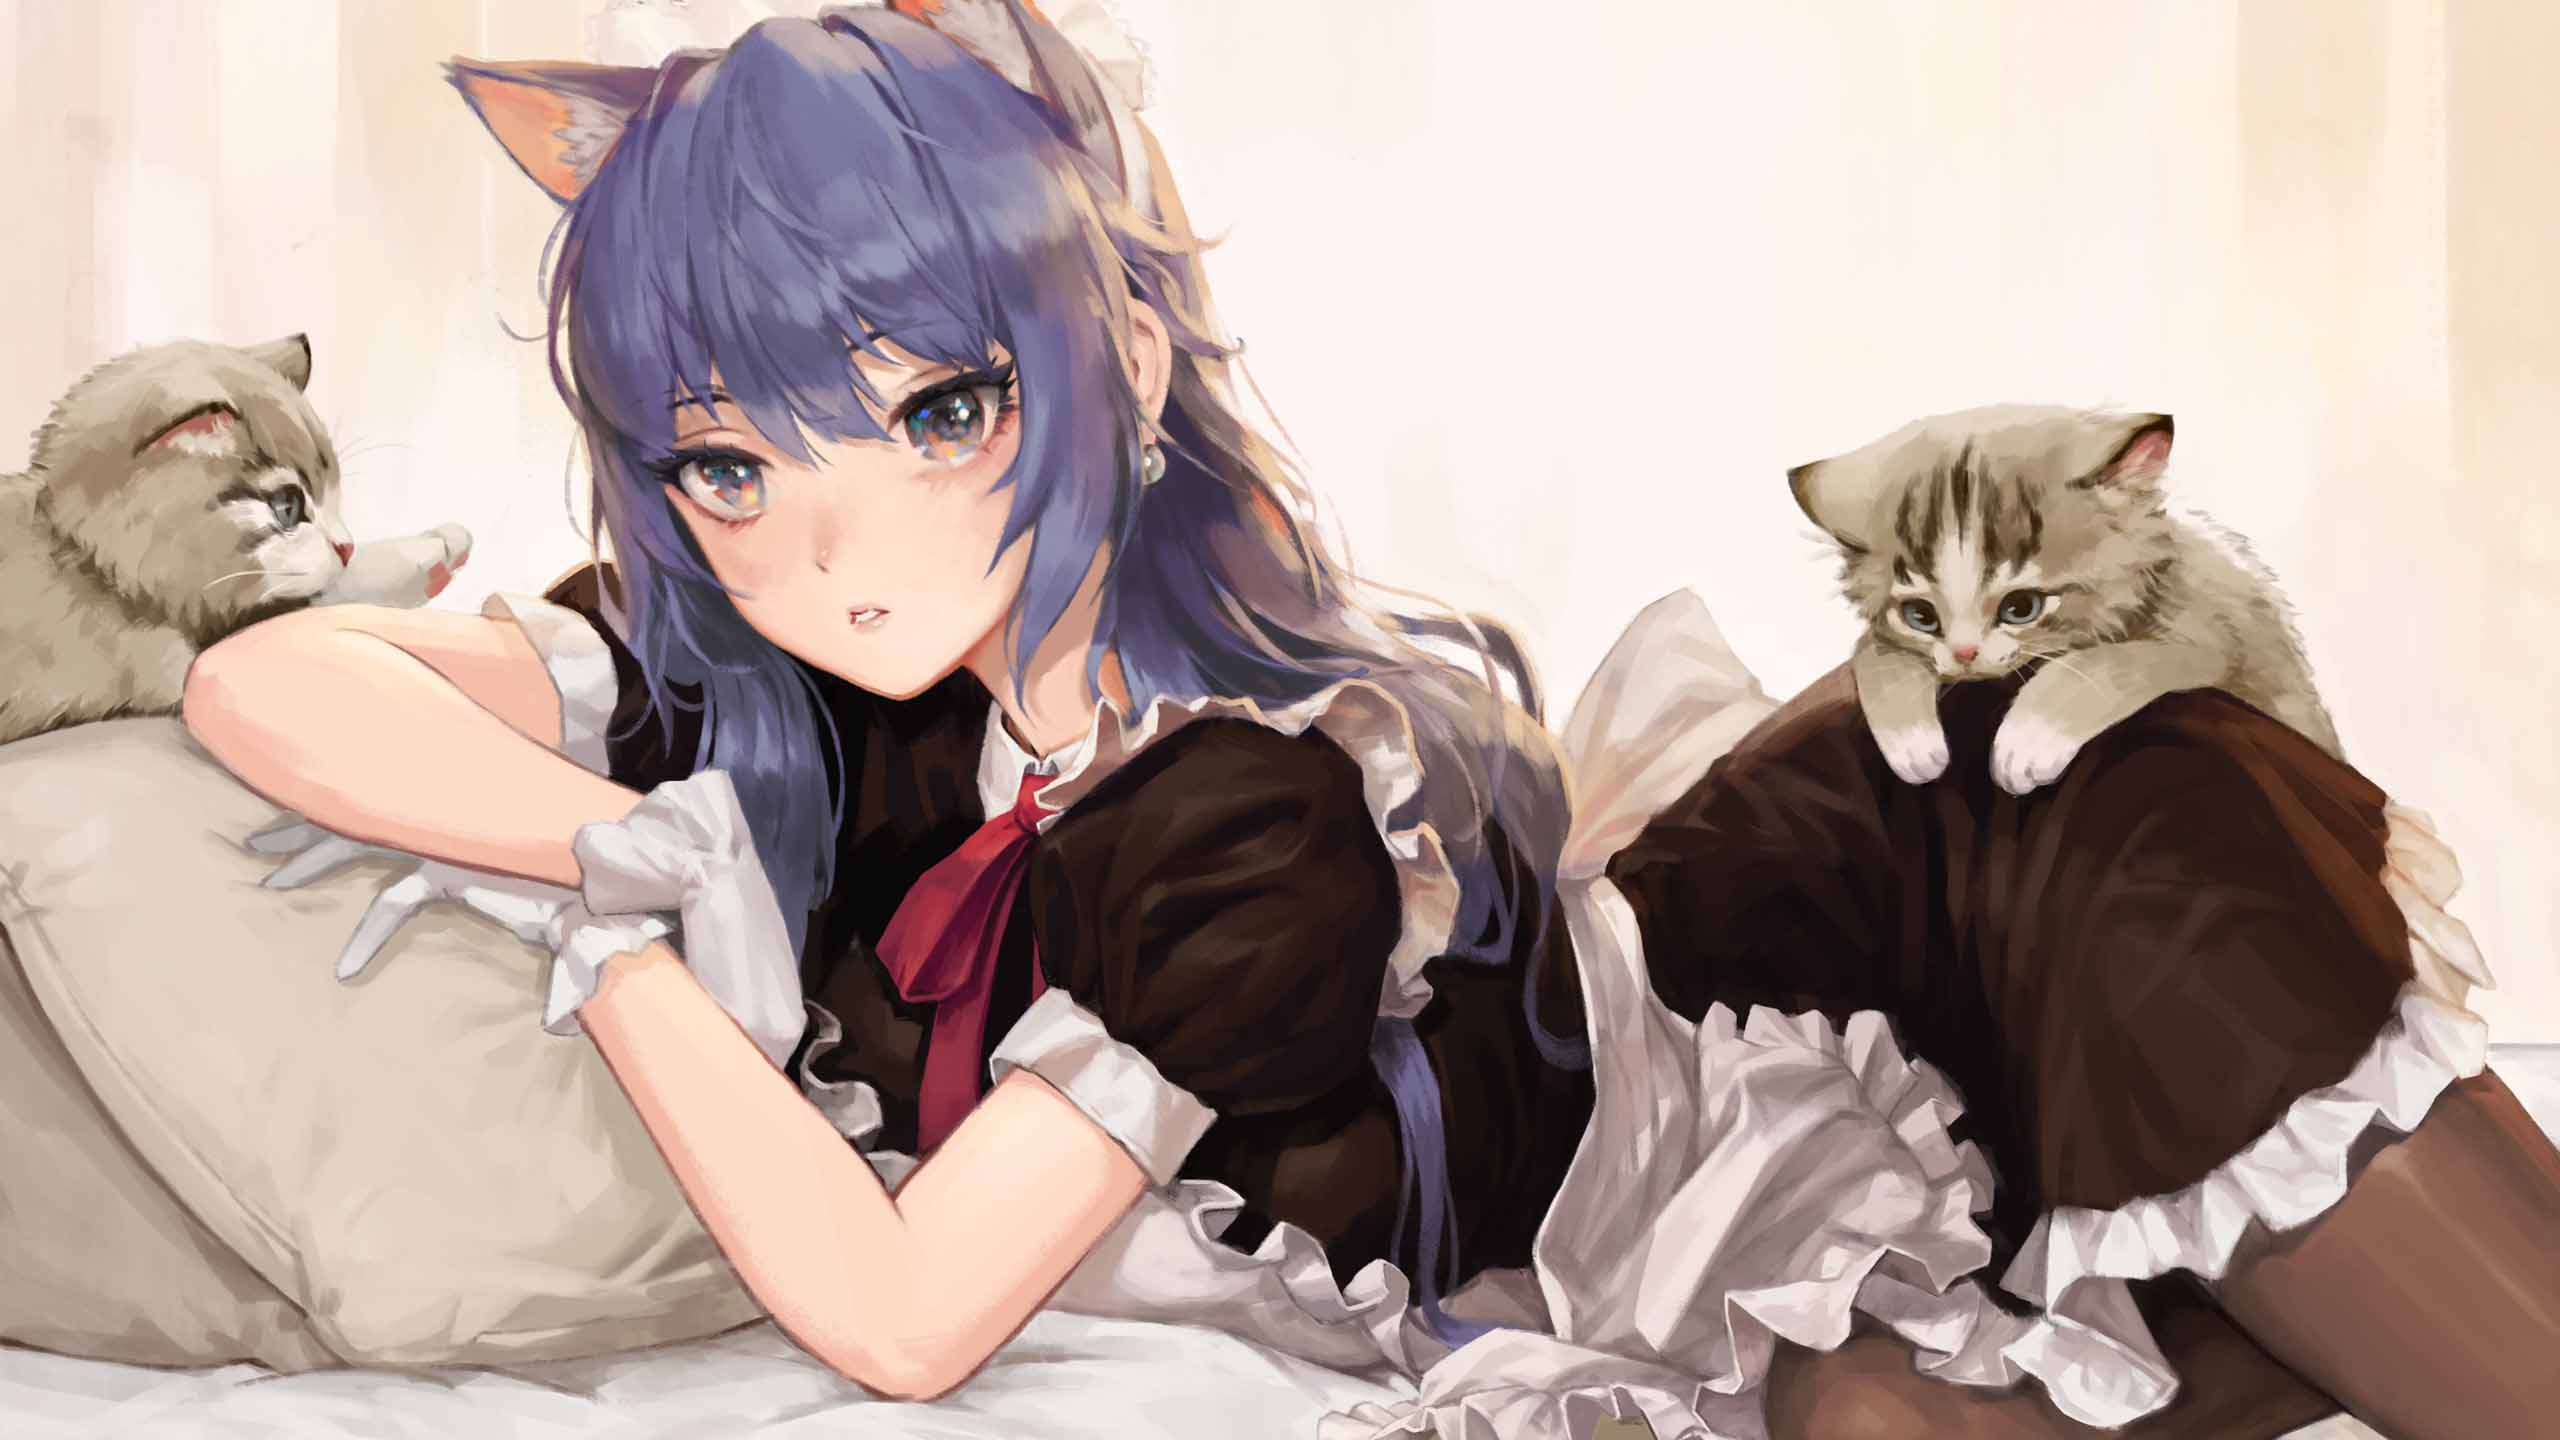 Blue Hair Anime Girl With Cat Kittens Black White Dress 2K Anime Girl